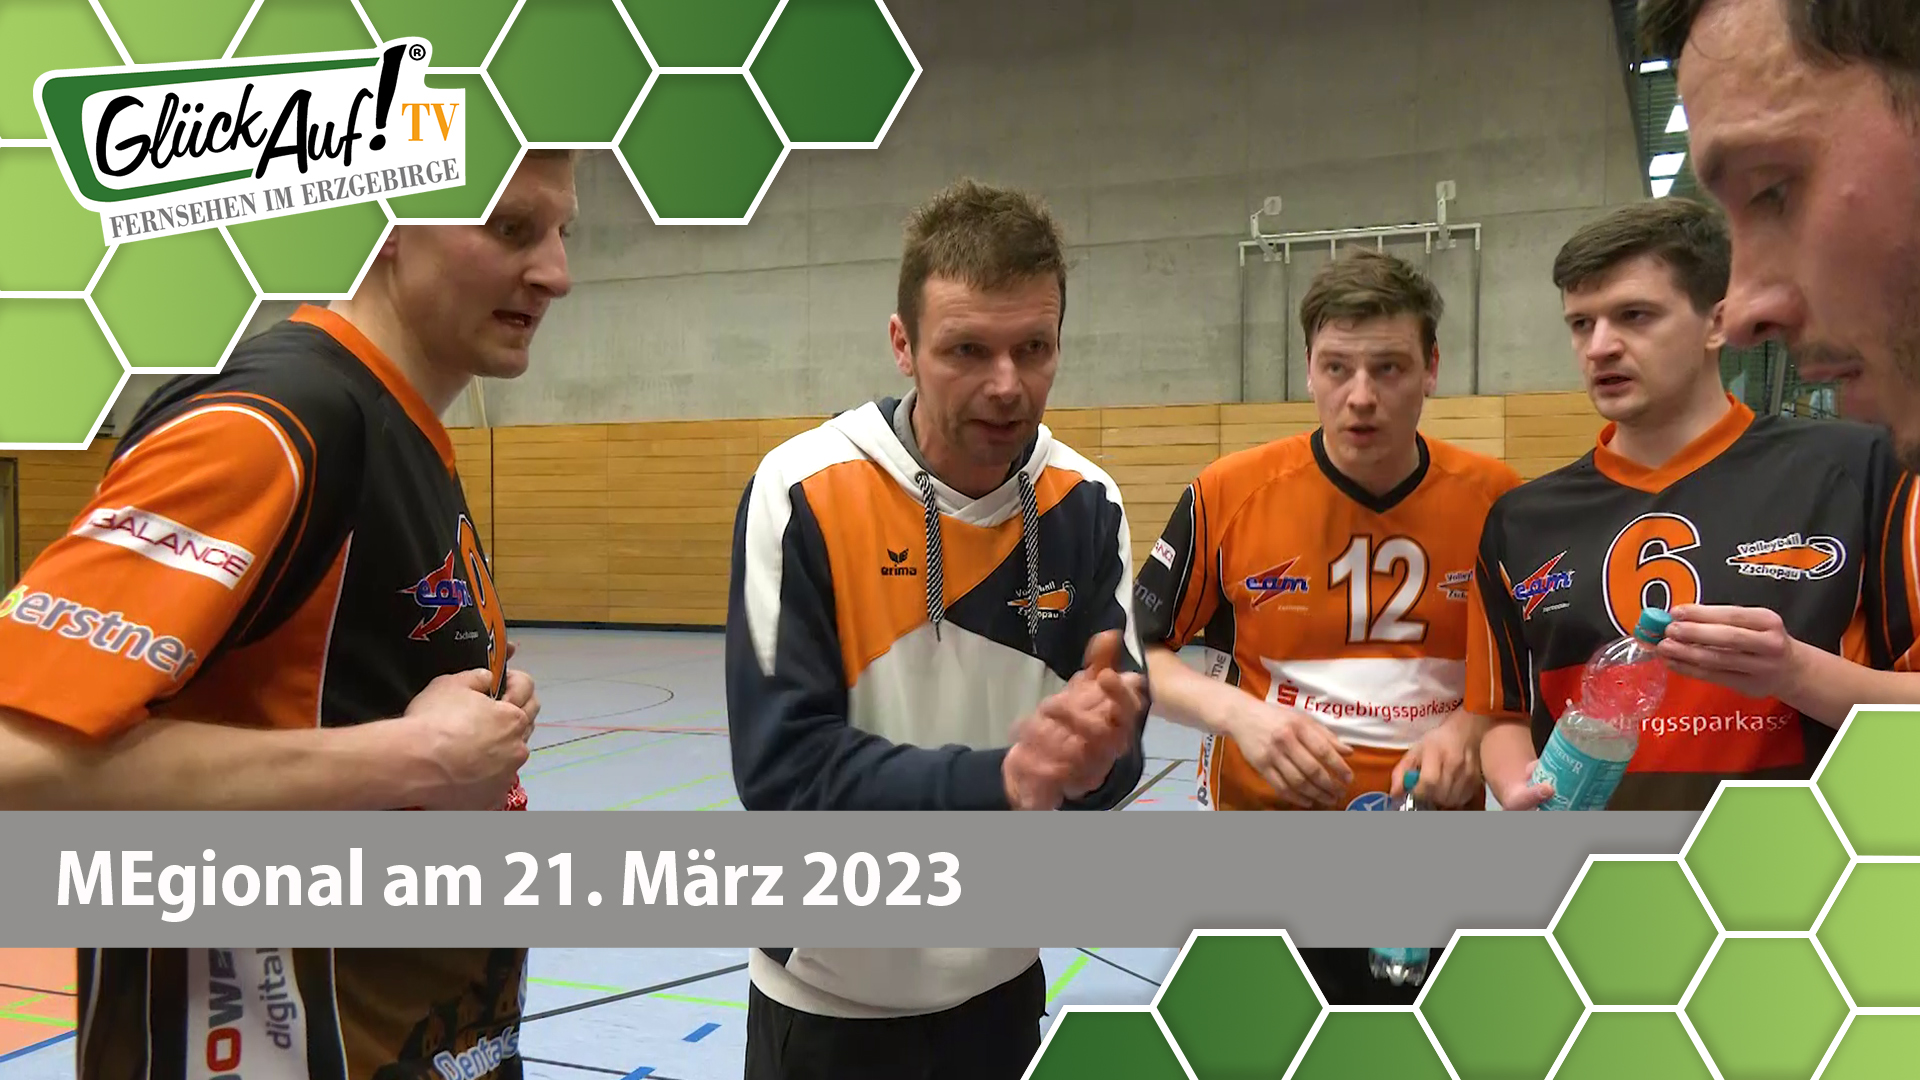 MEgional am 21. März 2023 - mit Volleyball in Zschopau